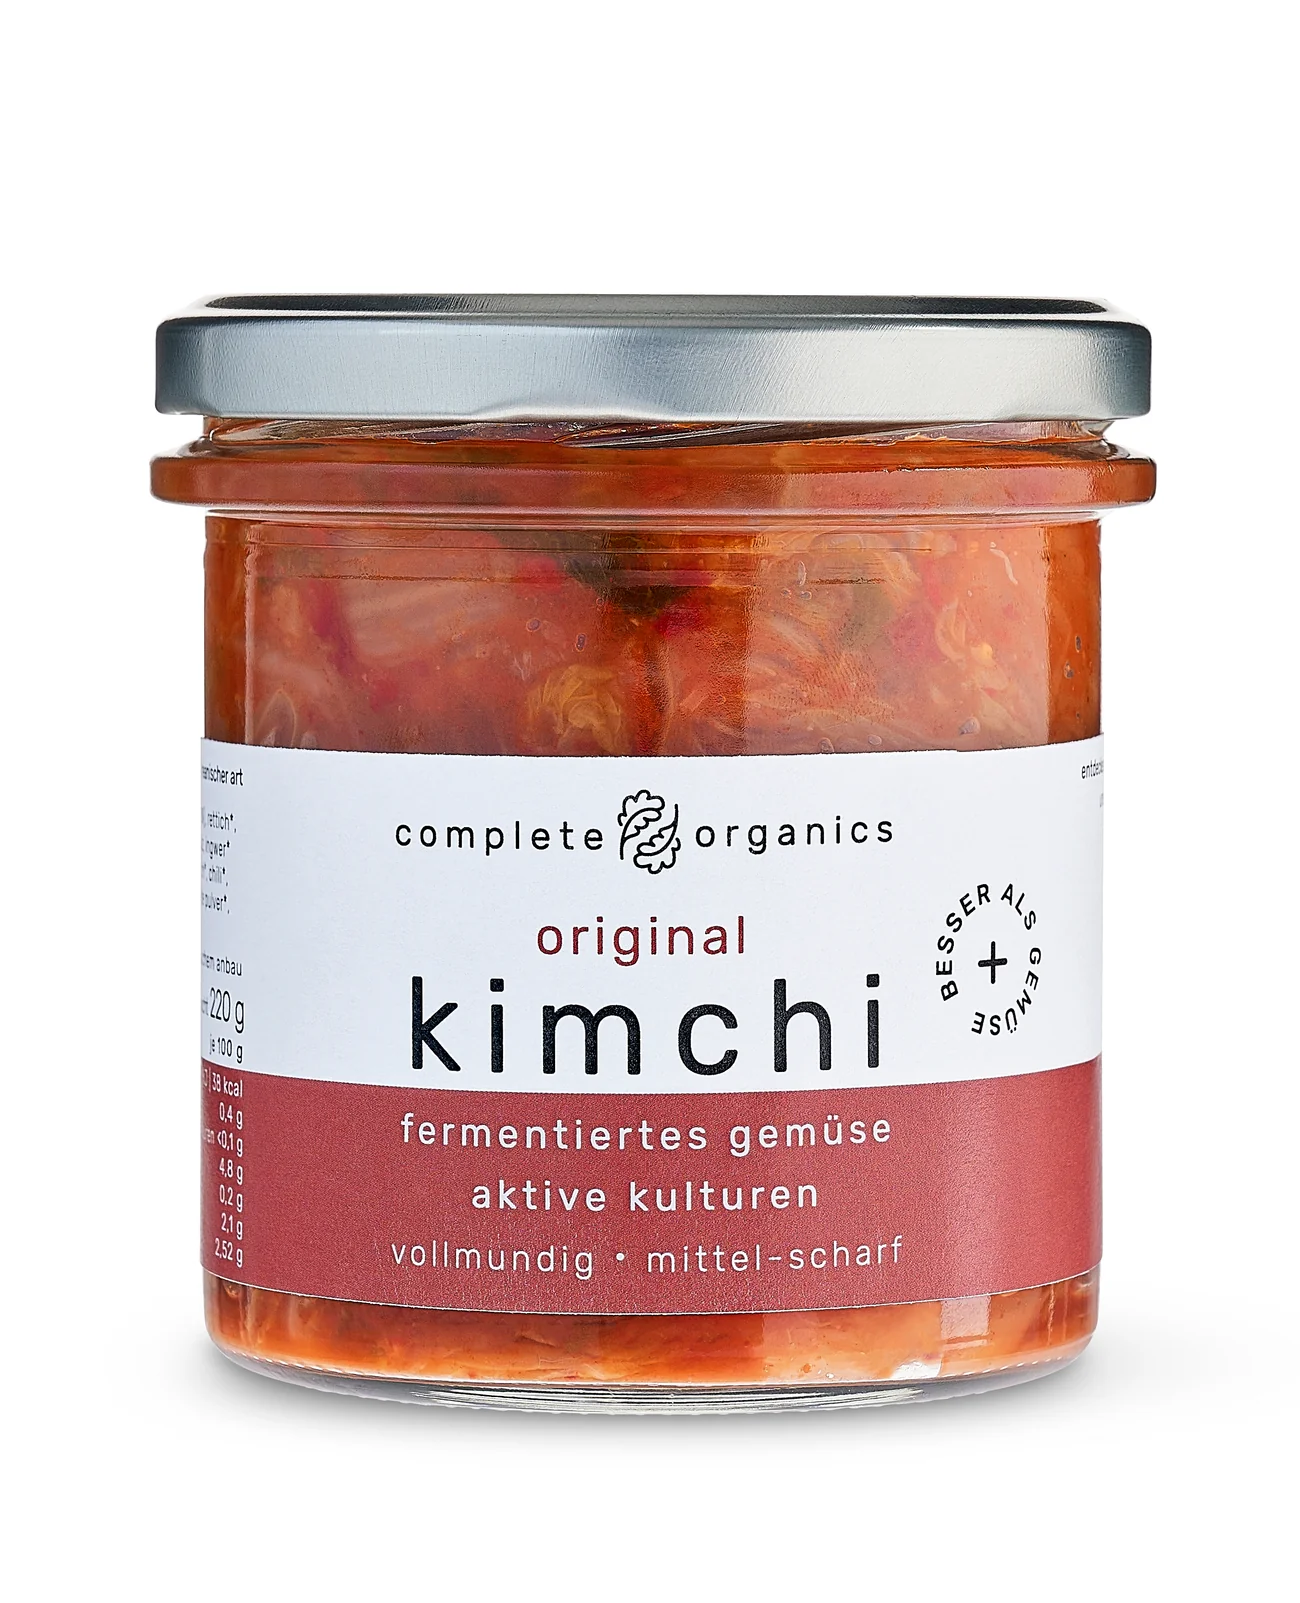 Completeorganics Kimchi original bio 240g